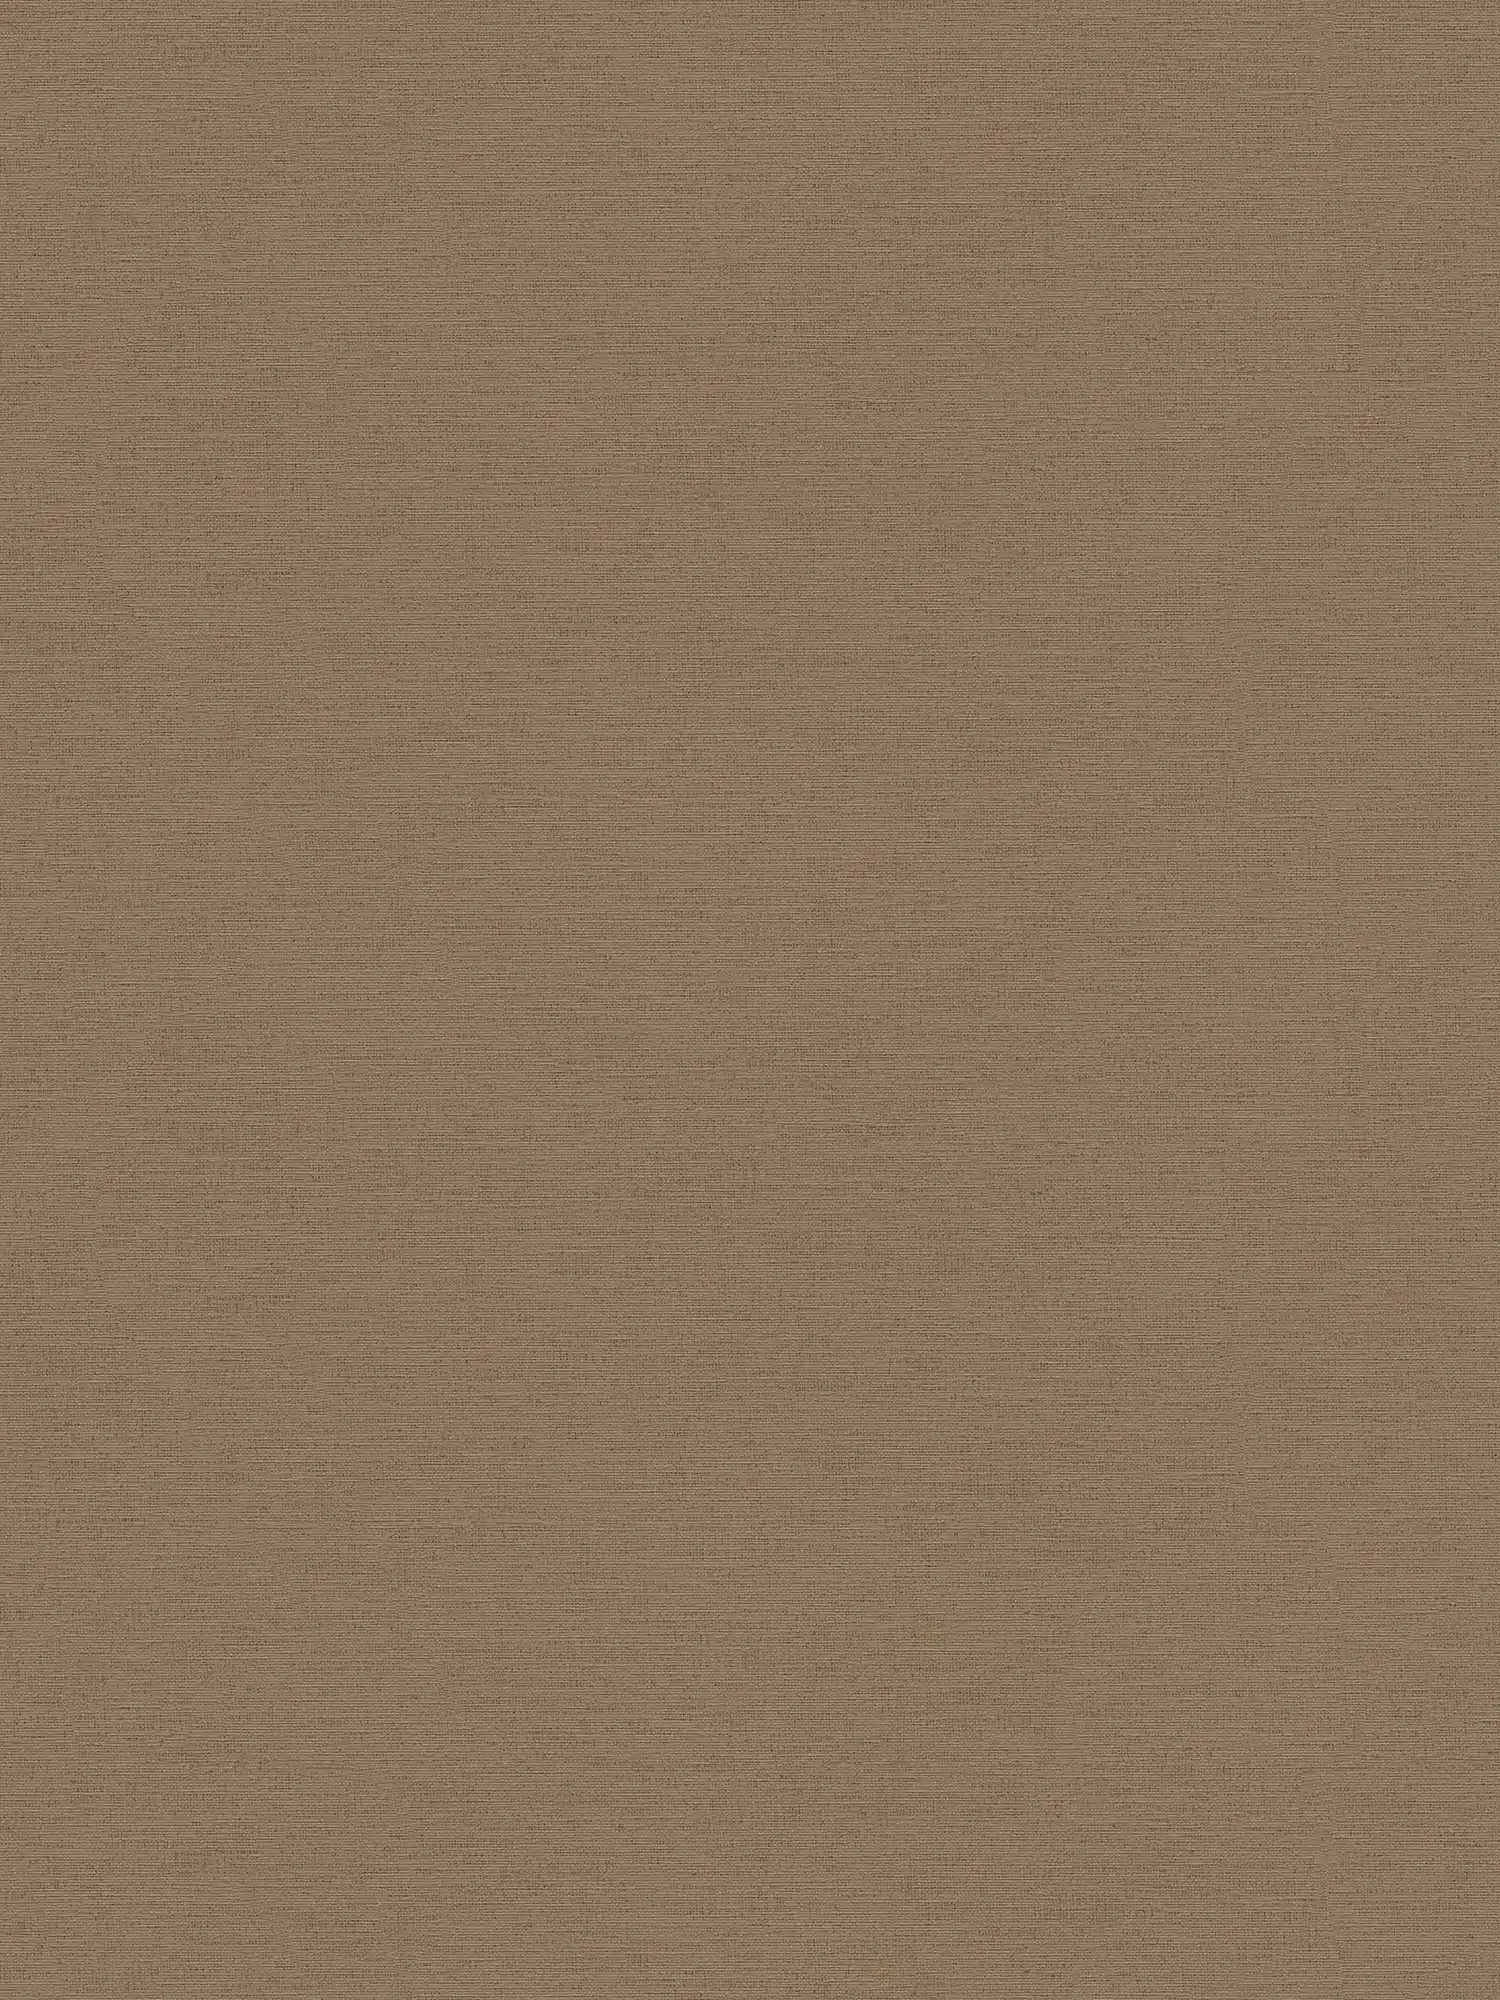 Papel pintado de aspecto de lino marrón y textura en relieve de aspecto textil
